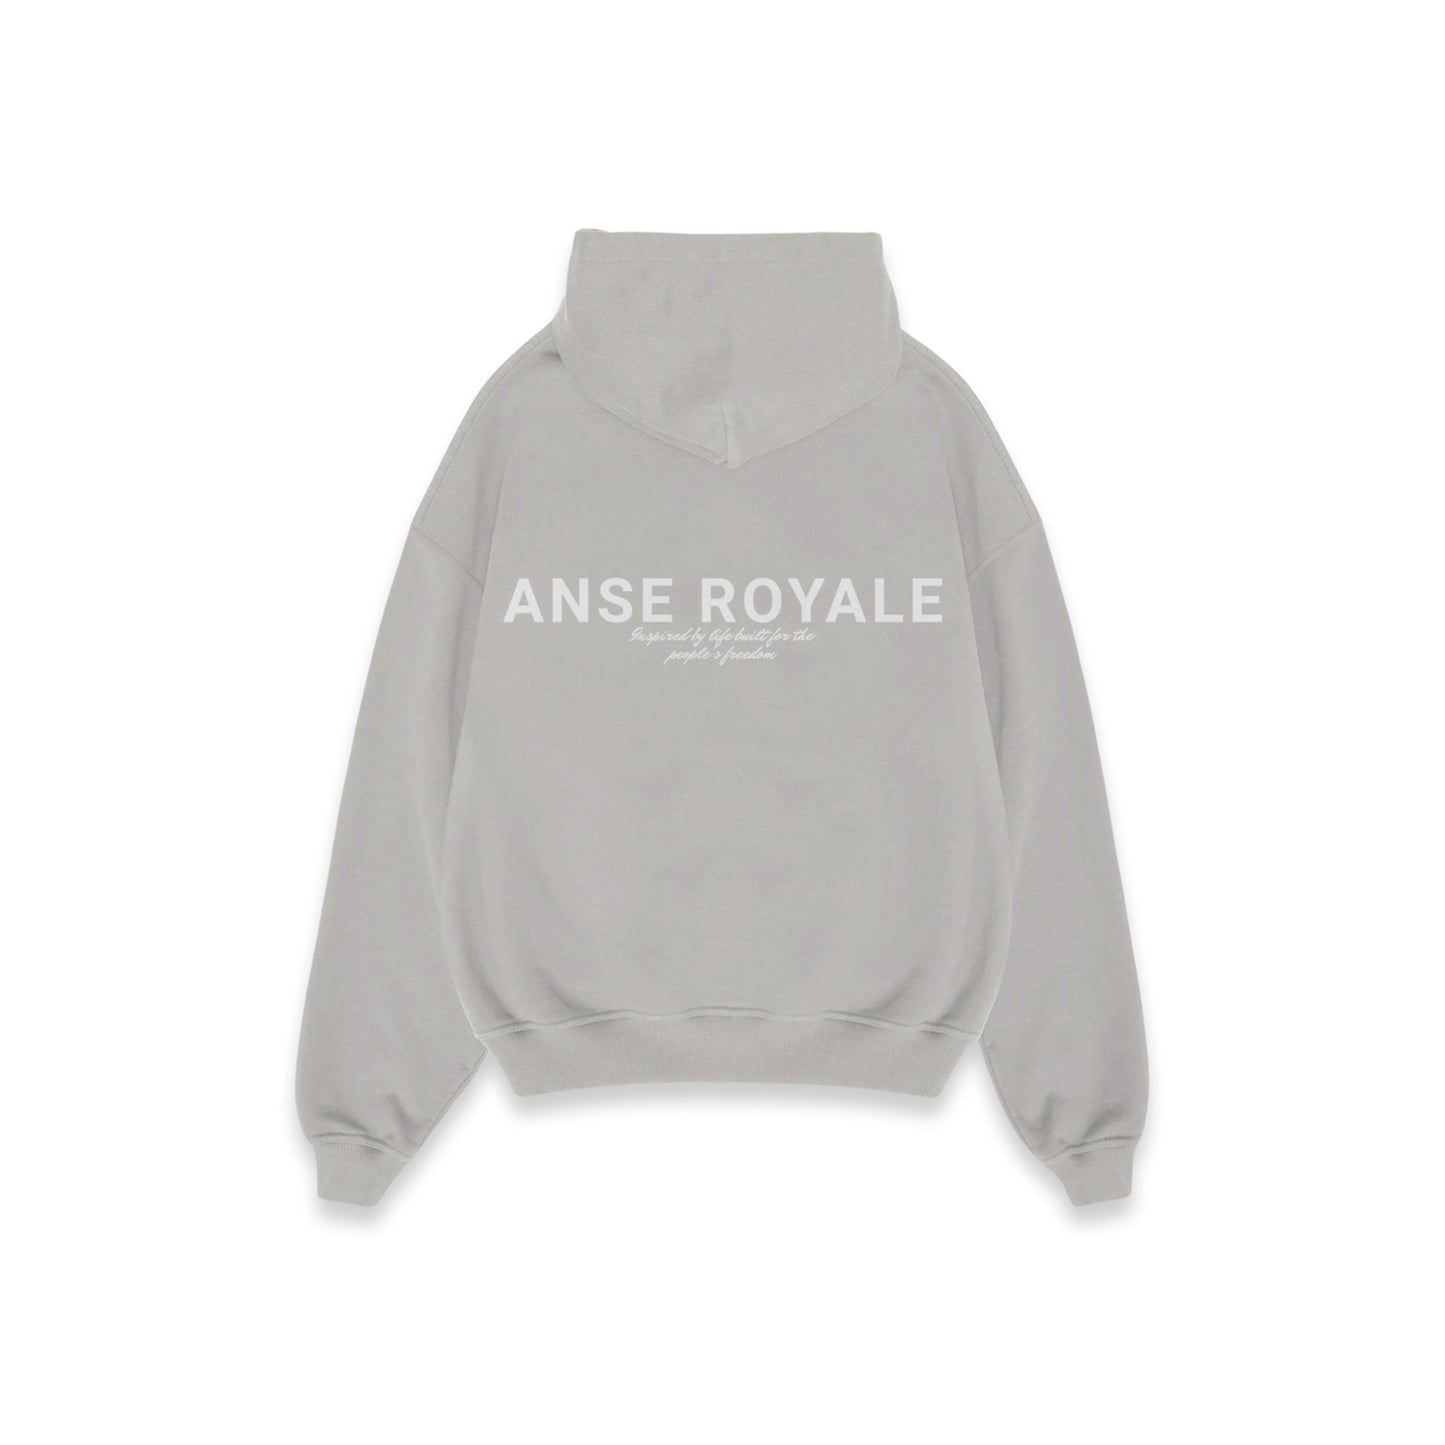 ANSE ROYALE SIGNATURE ORIGINS - Premium hoodies from ANSE ROYALE - Just $0! Shop now at ANSE ROYALE